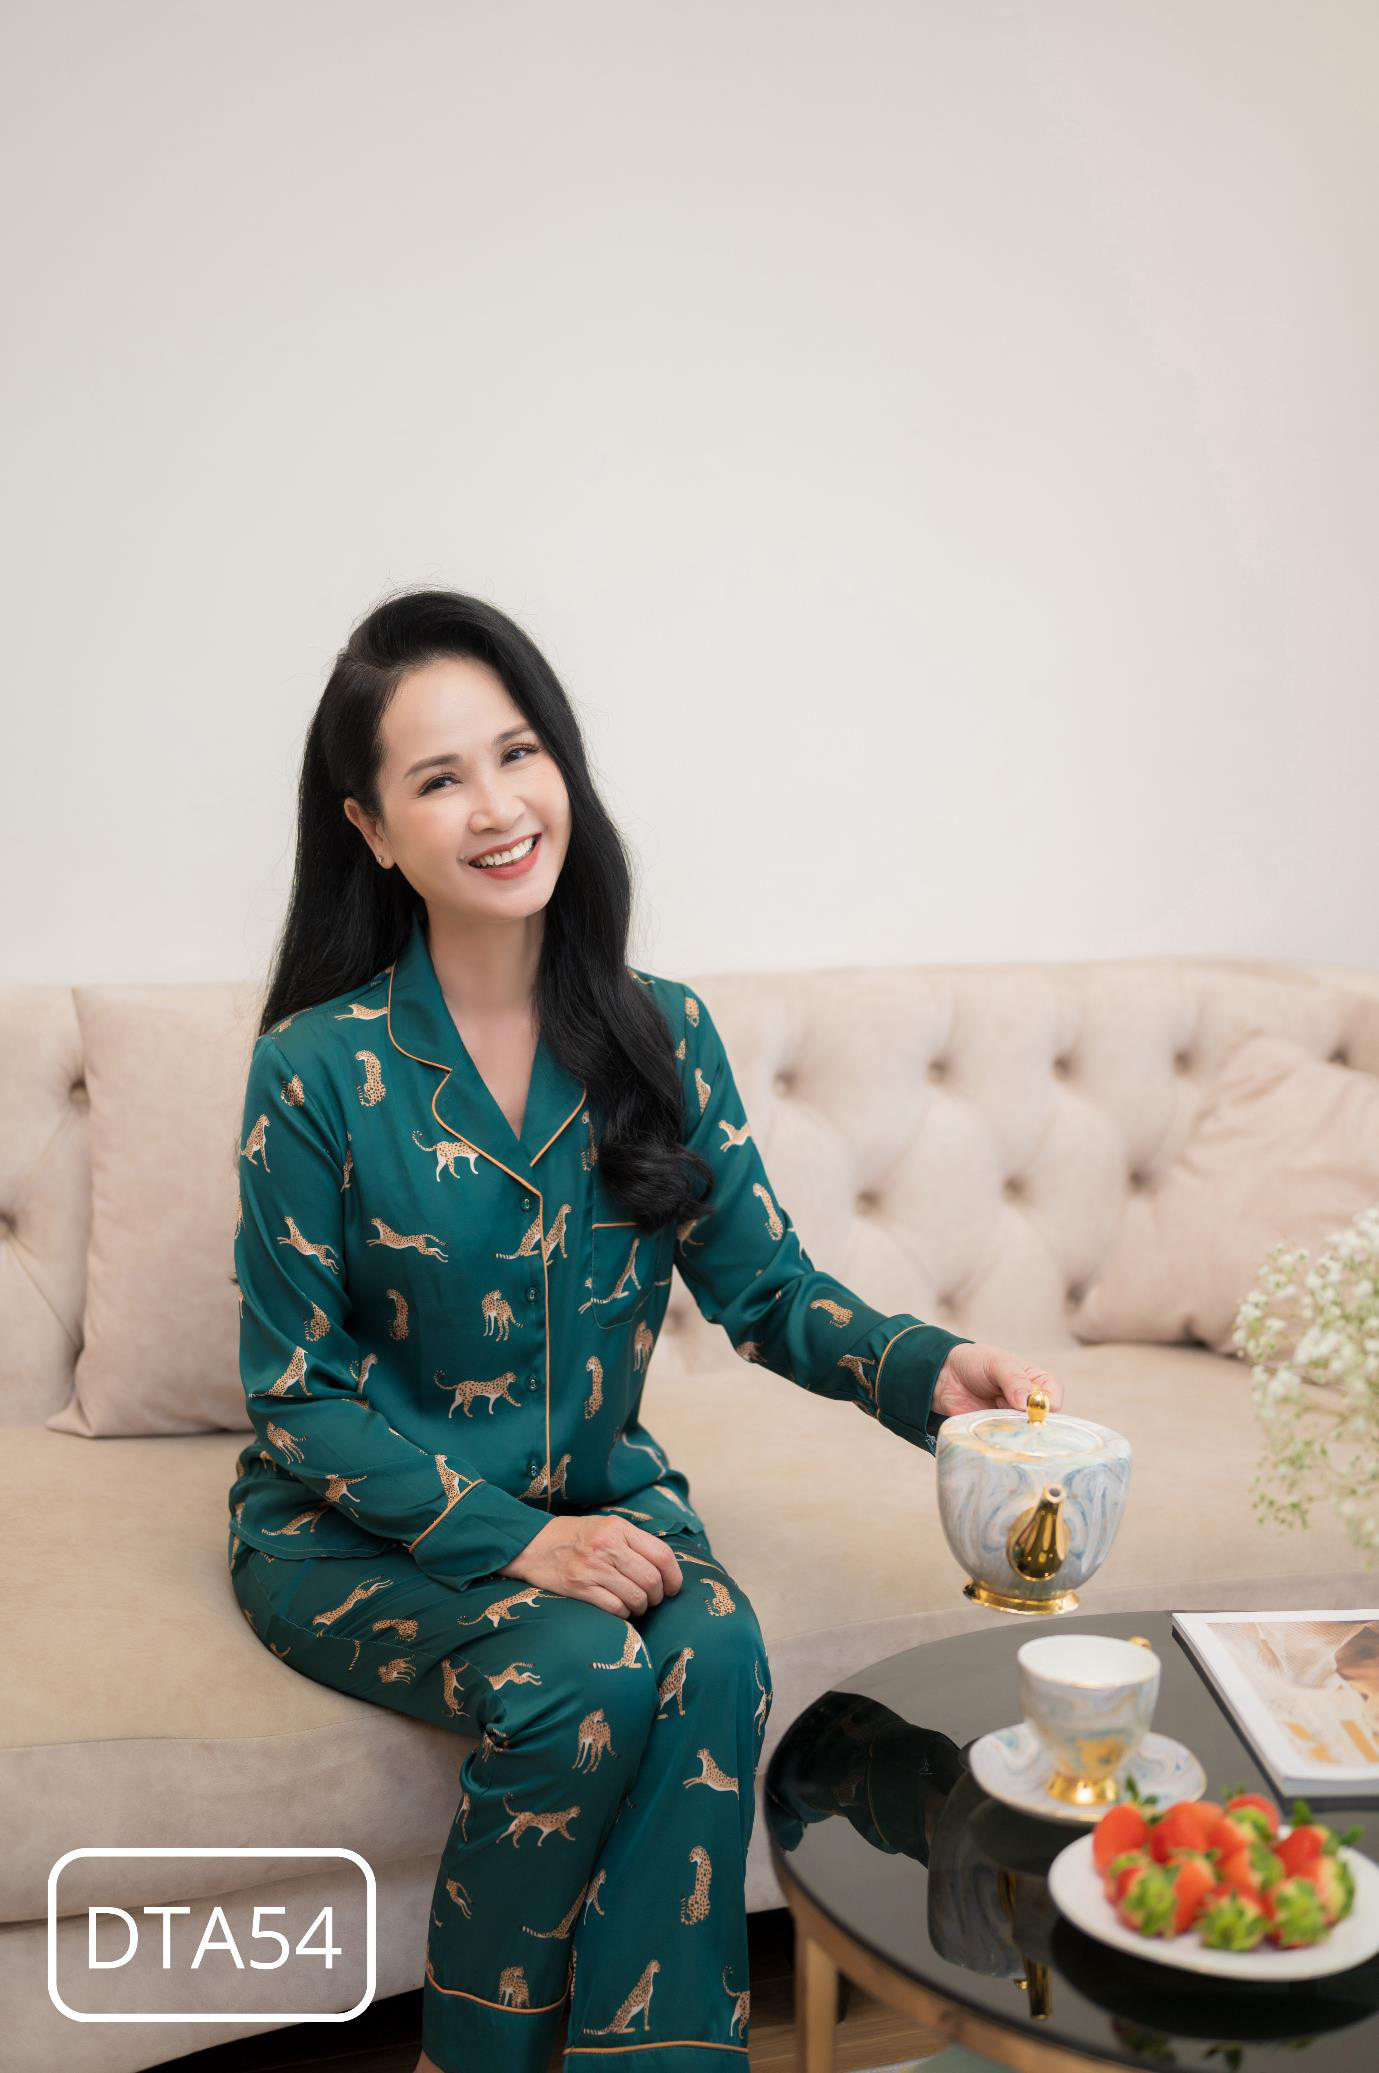 NSND Lan Hương gợi ý món quà tặng mẹ nhân dịp Tết Nhâm Dần 2022 - Ảnh 3.